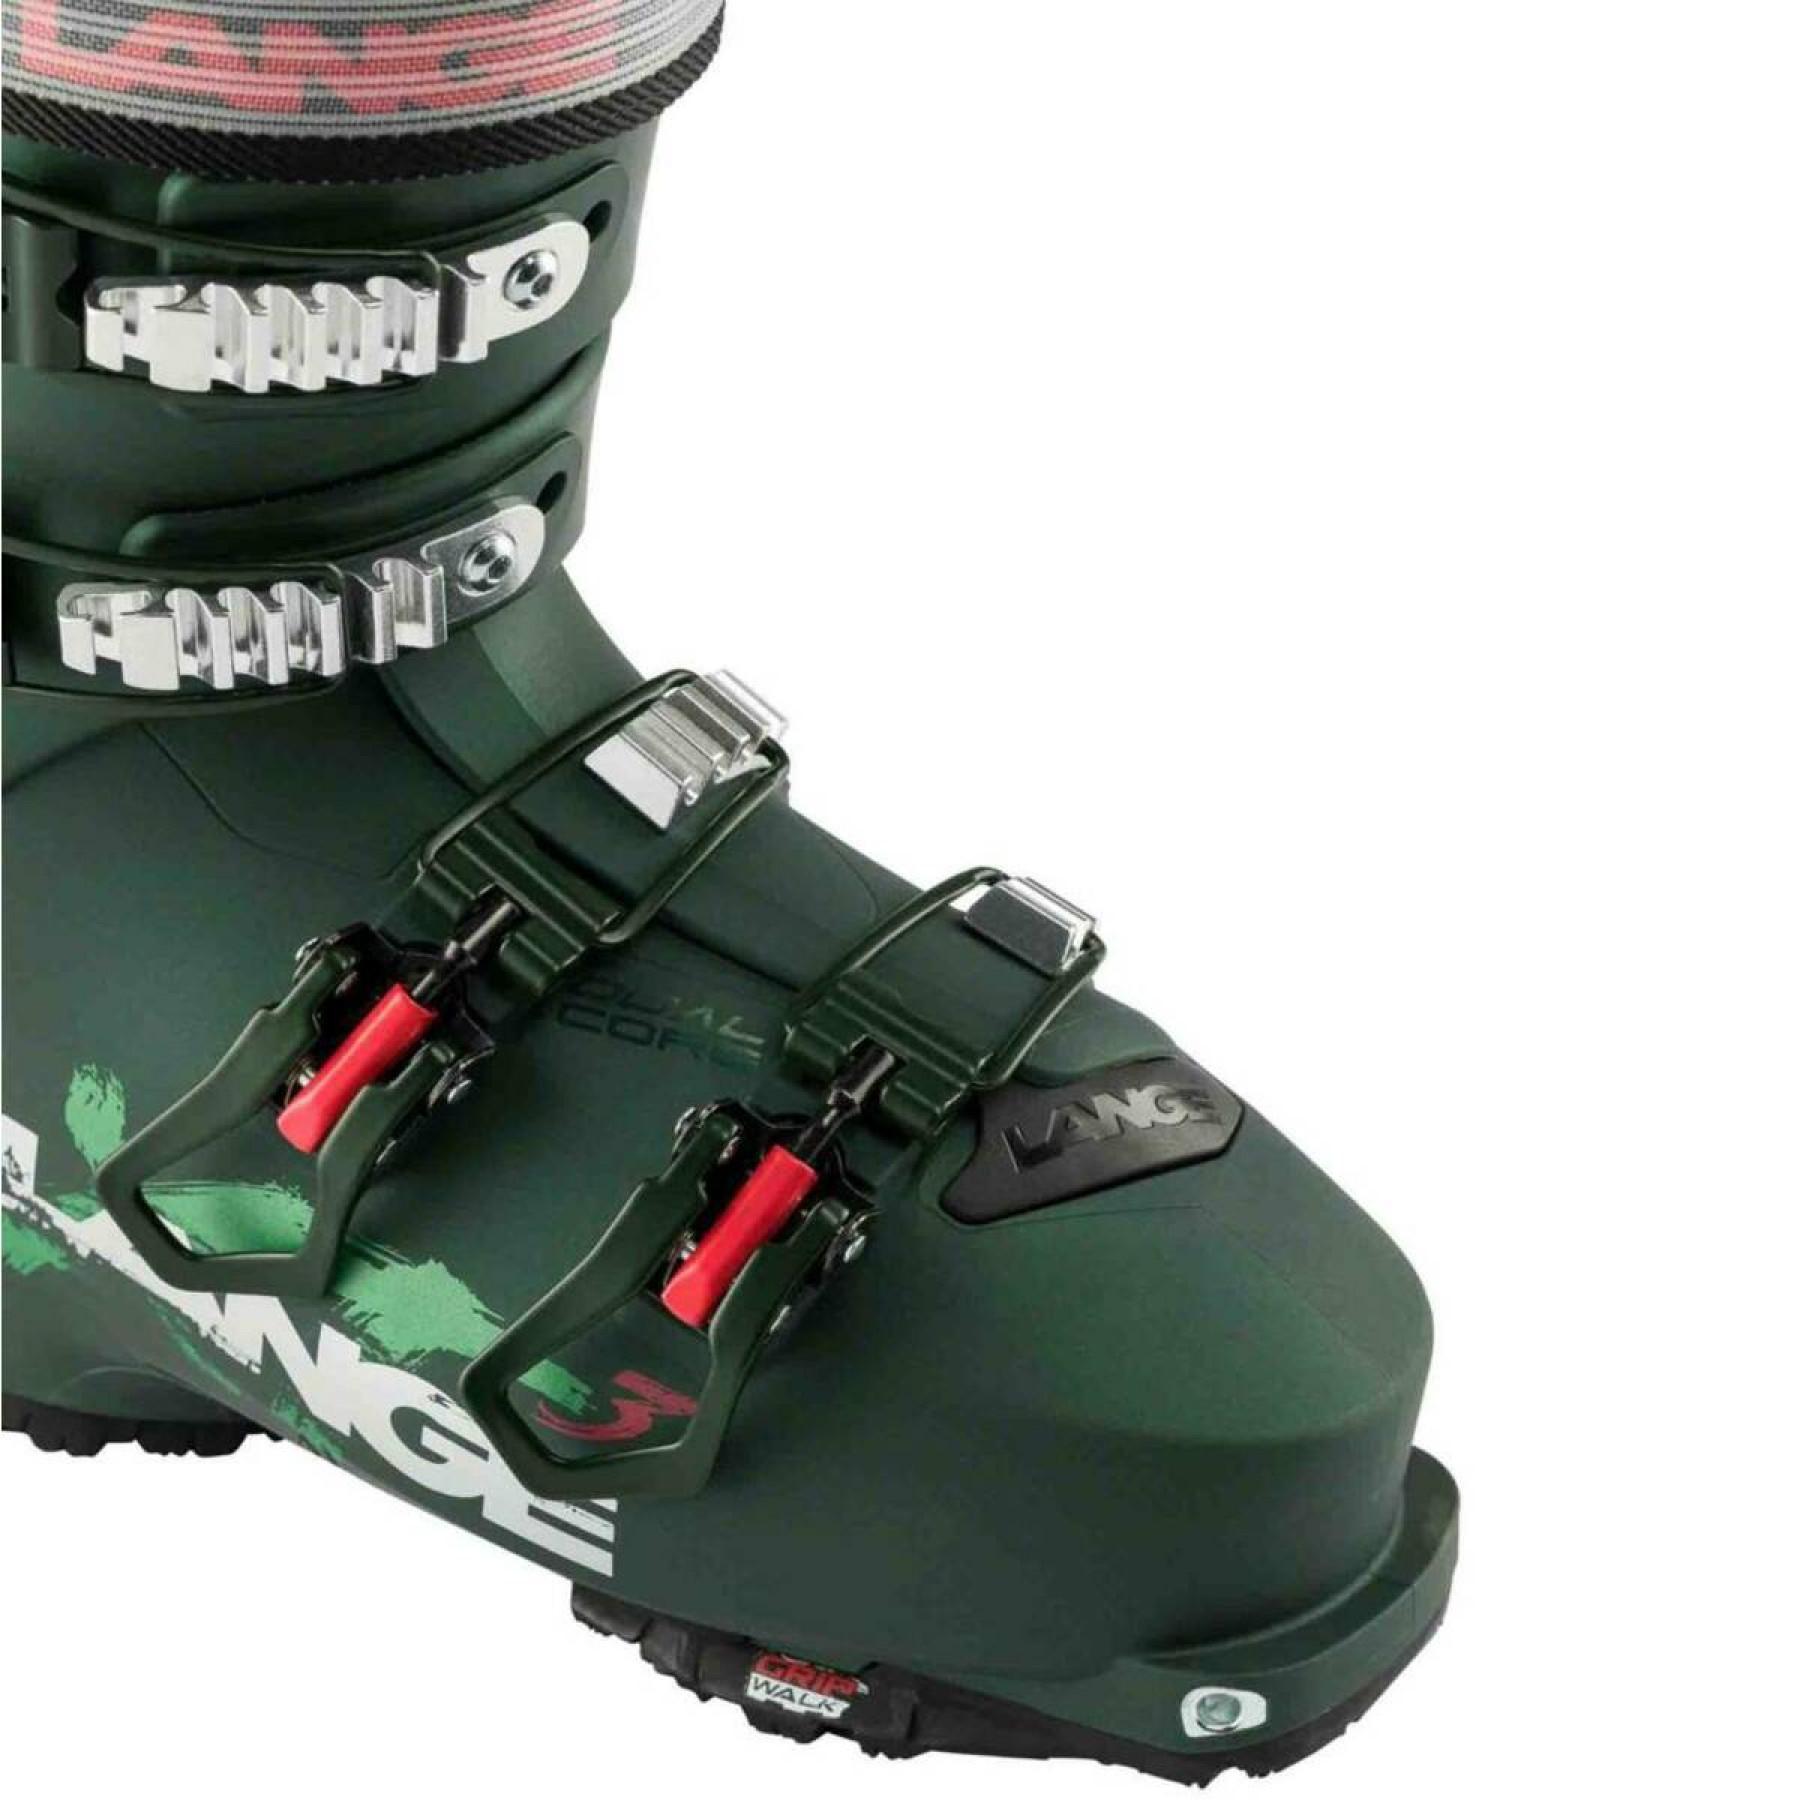 Zapatillas de esquí mujer Lange xt3 90 gw